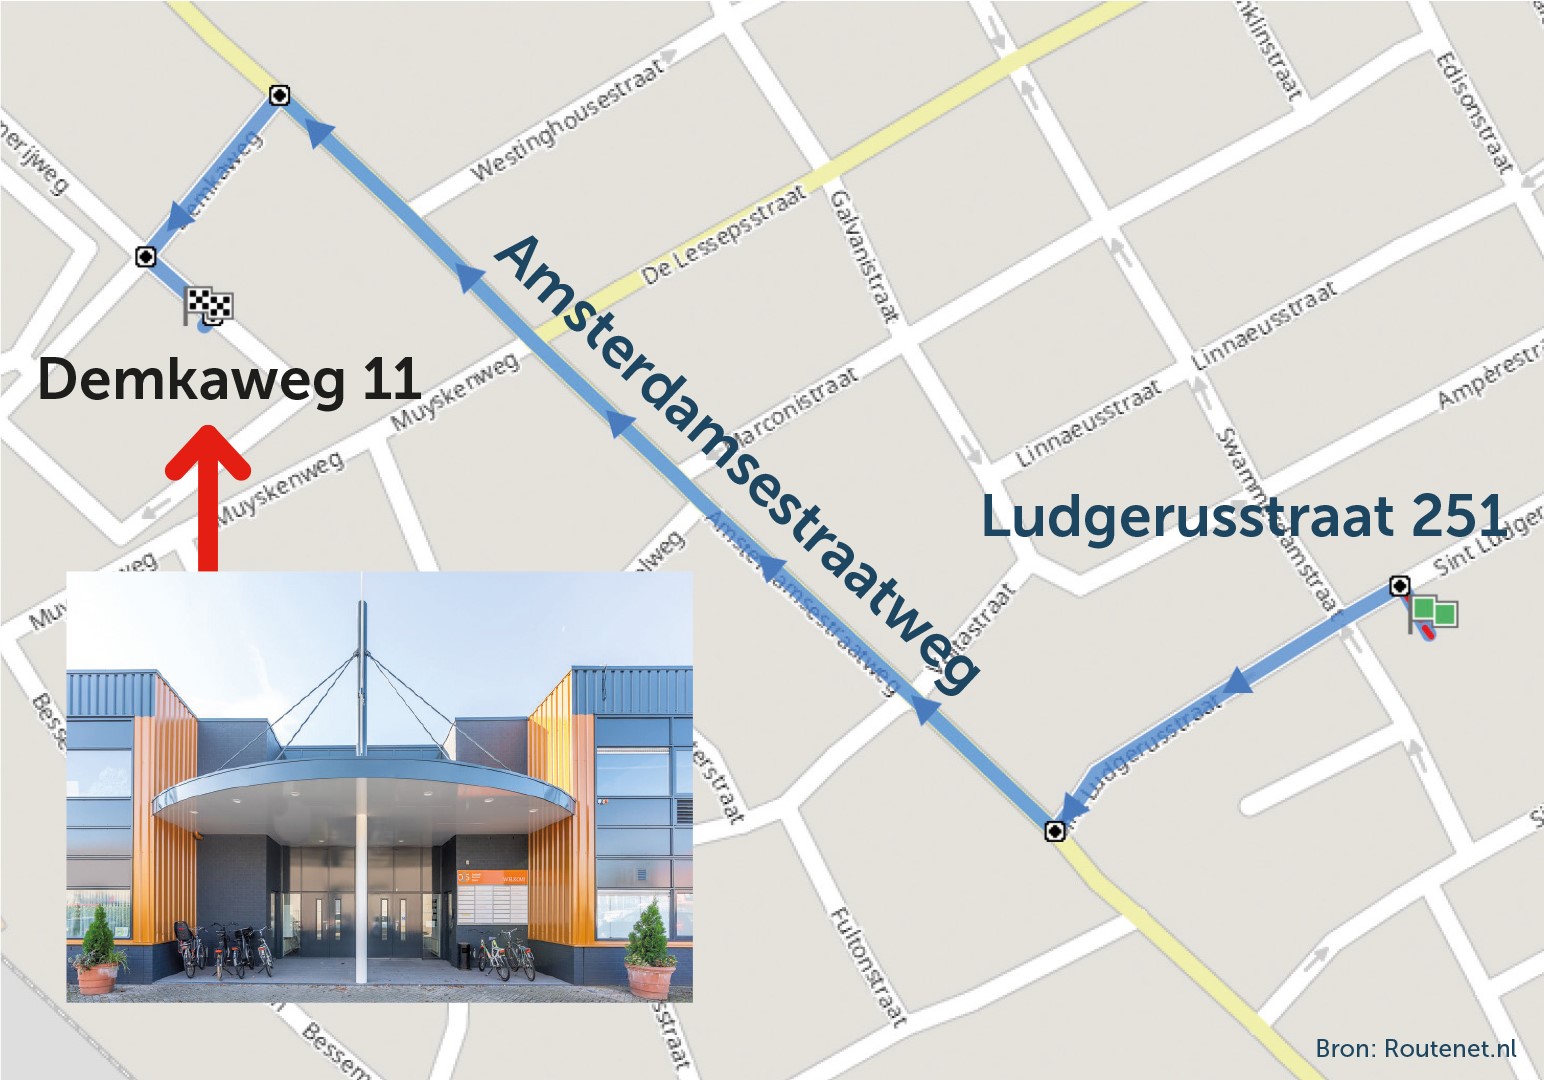 Route van de Ludegerusstraat 251 naar de Demkaweg 11